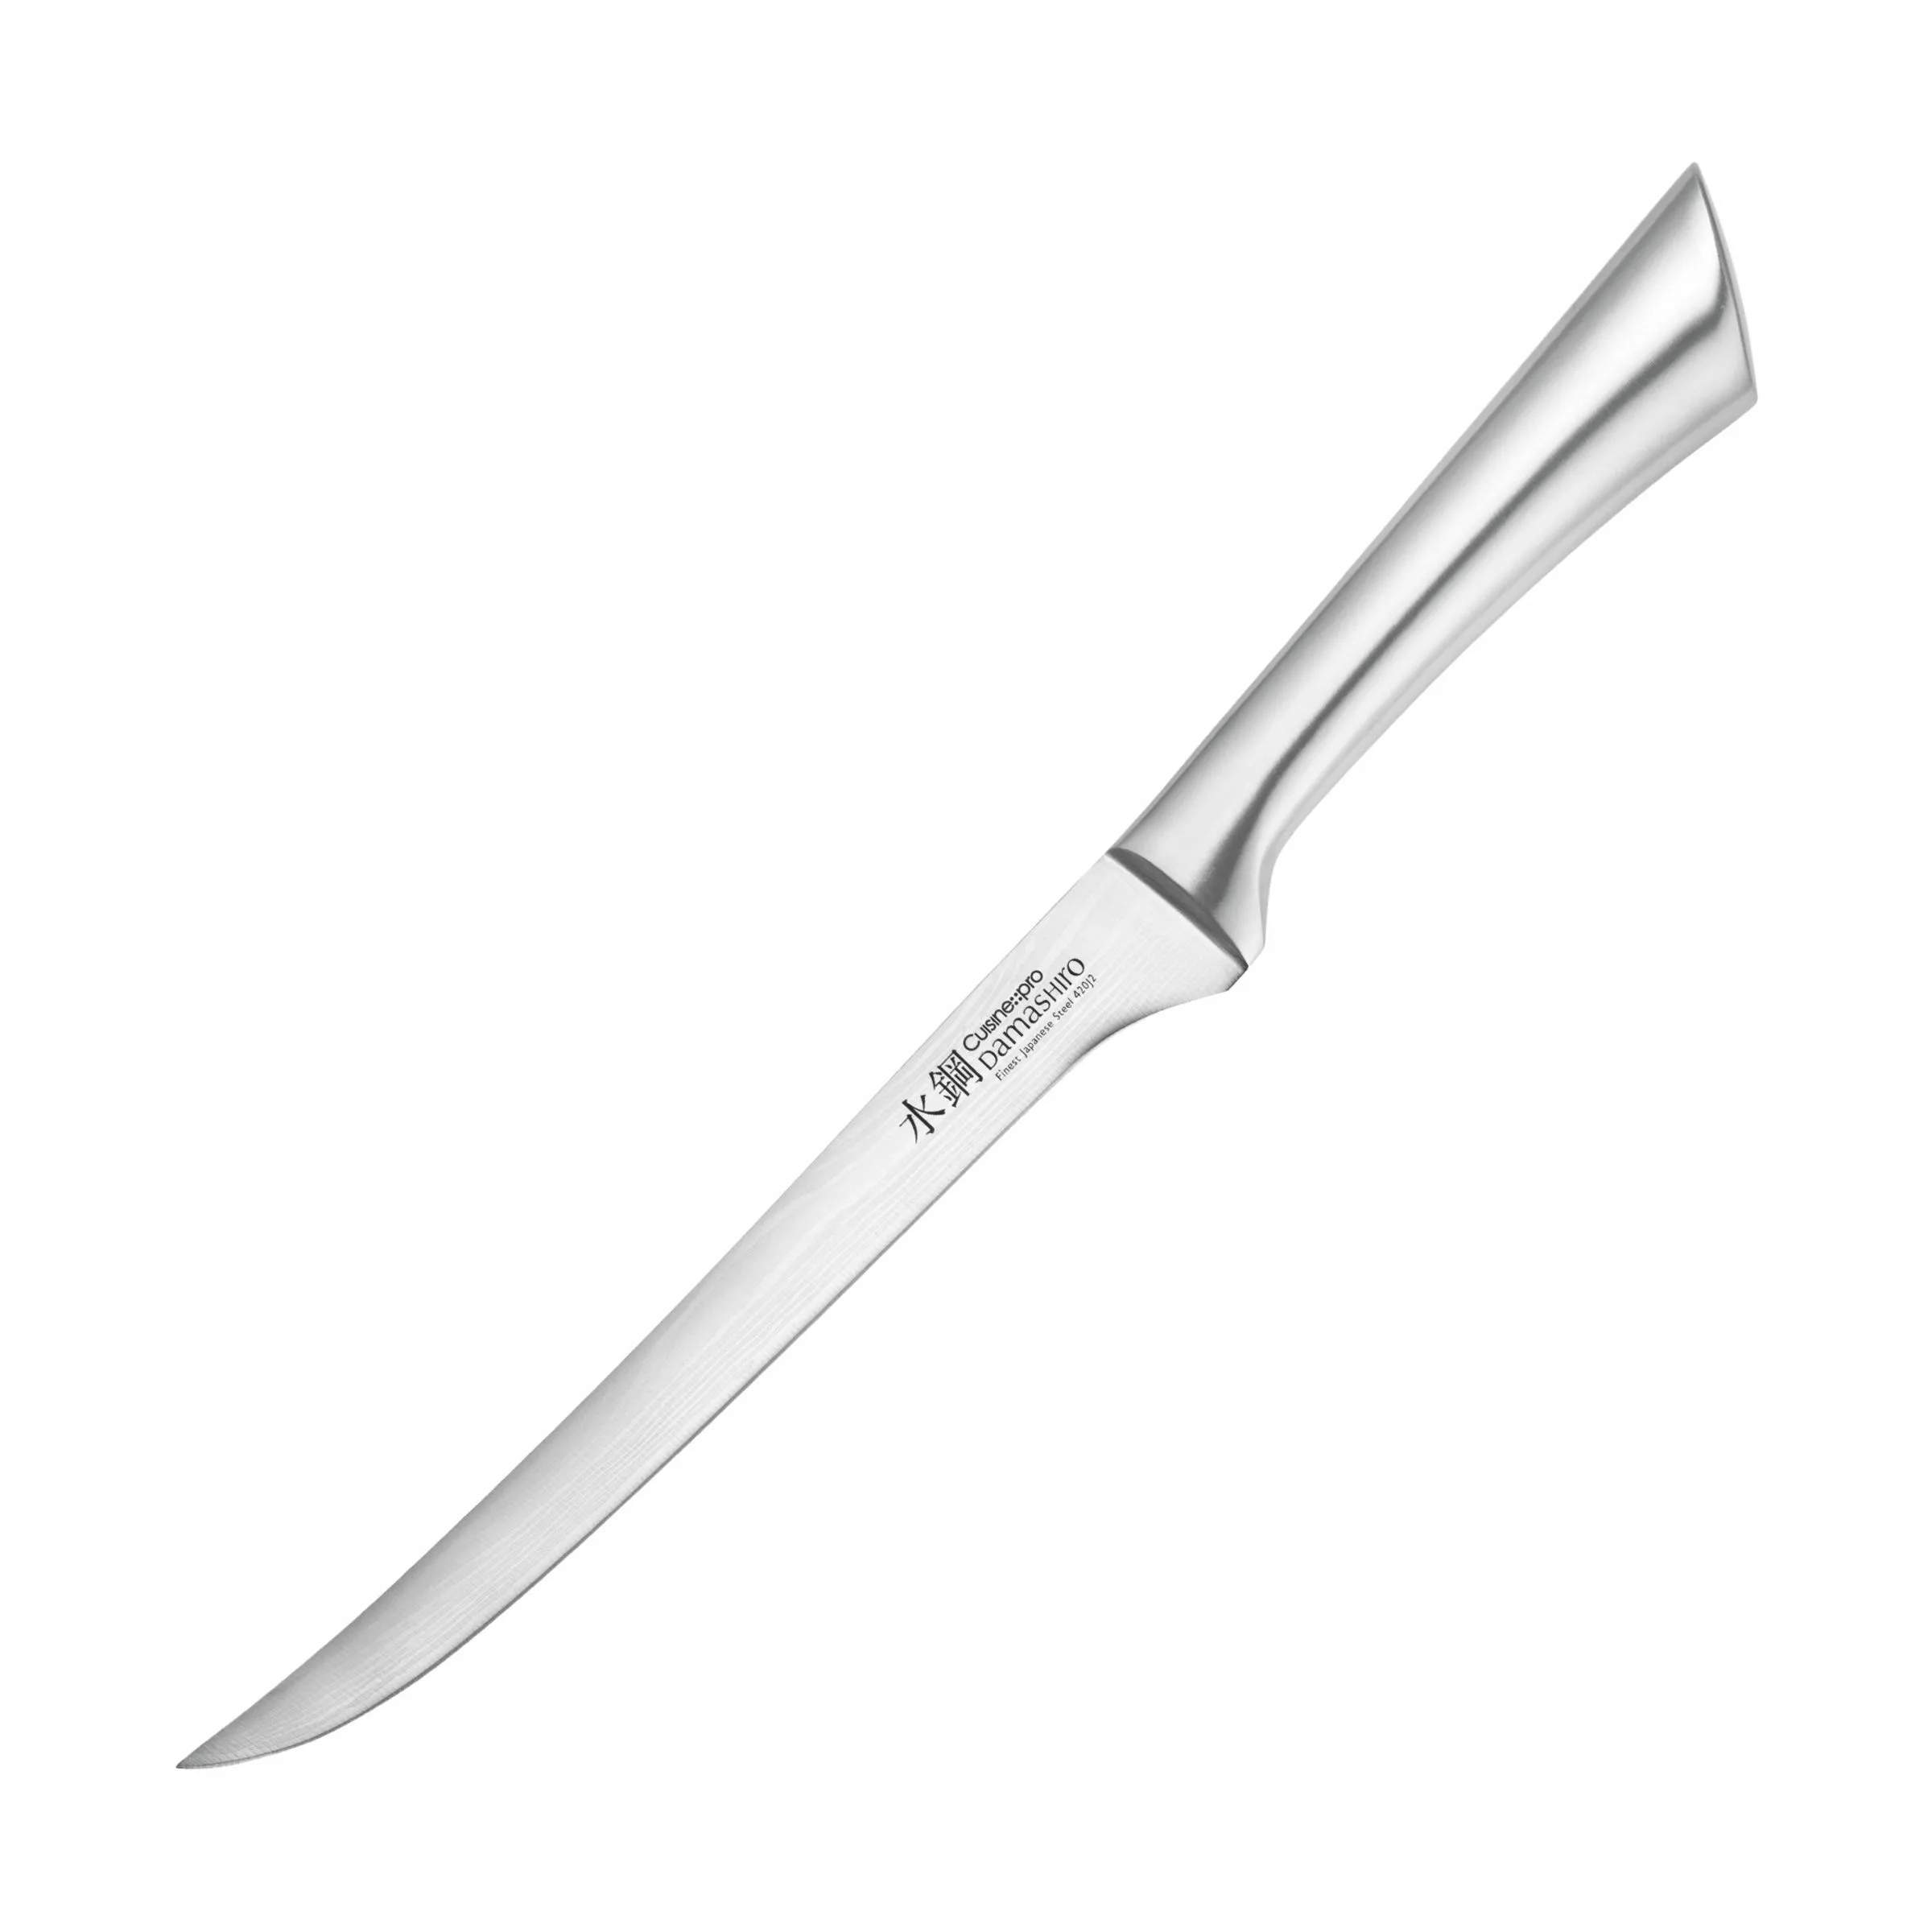 Damashiro® Fileteringskniv, sølvfarvet/sort, large